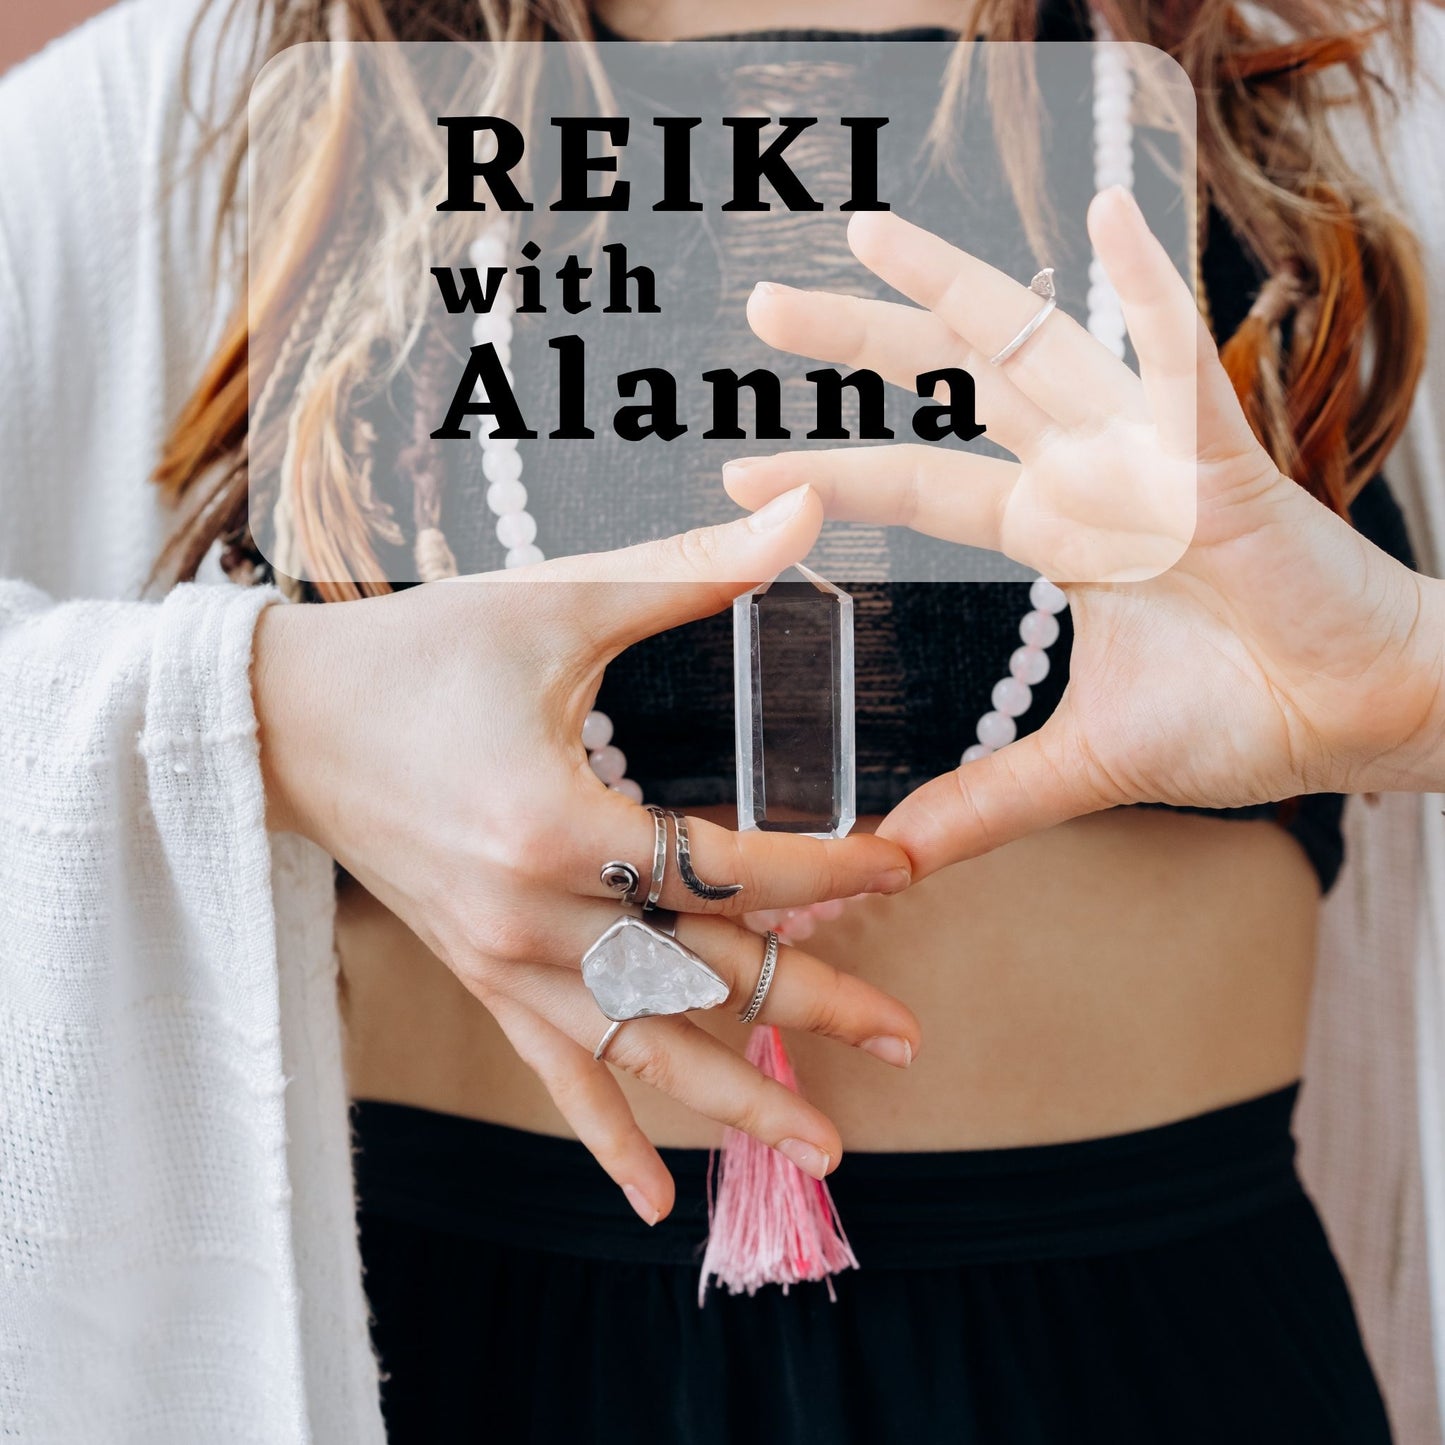 Reiki with Alanna: May 8 & 22